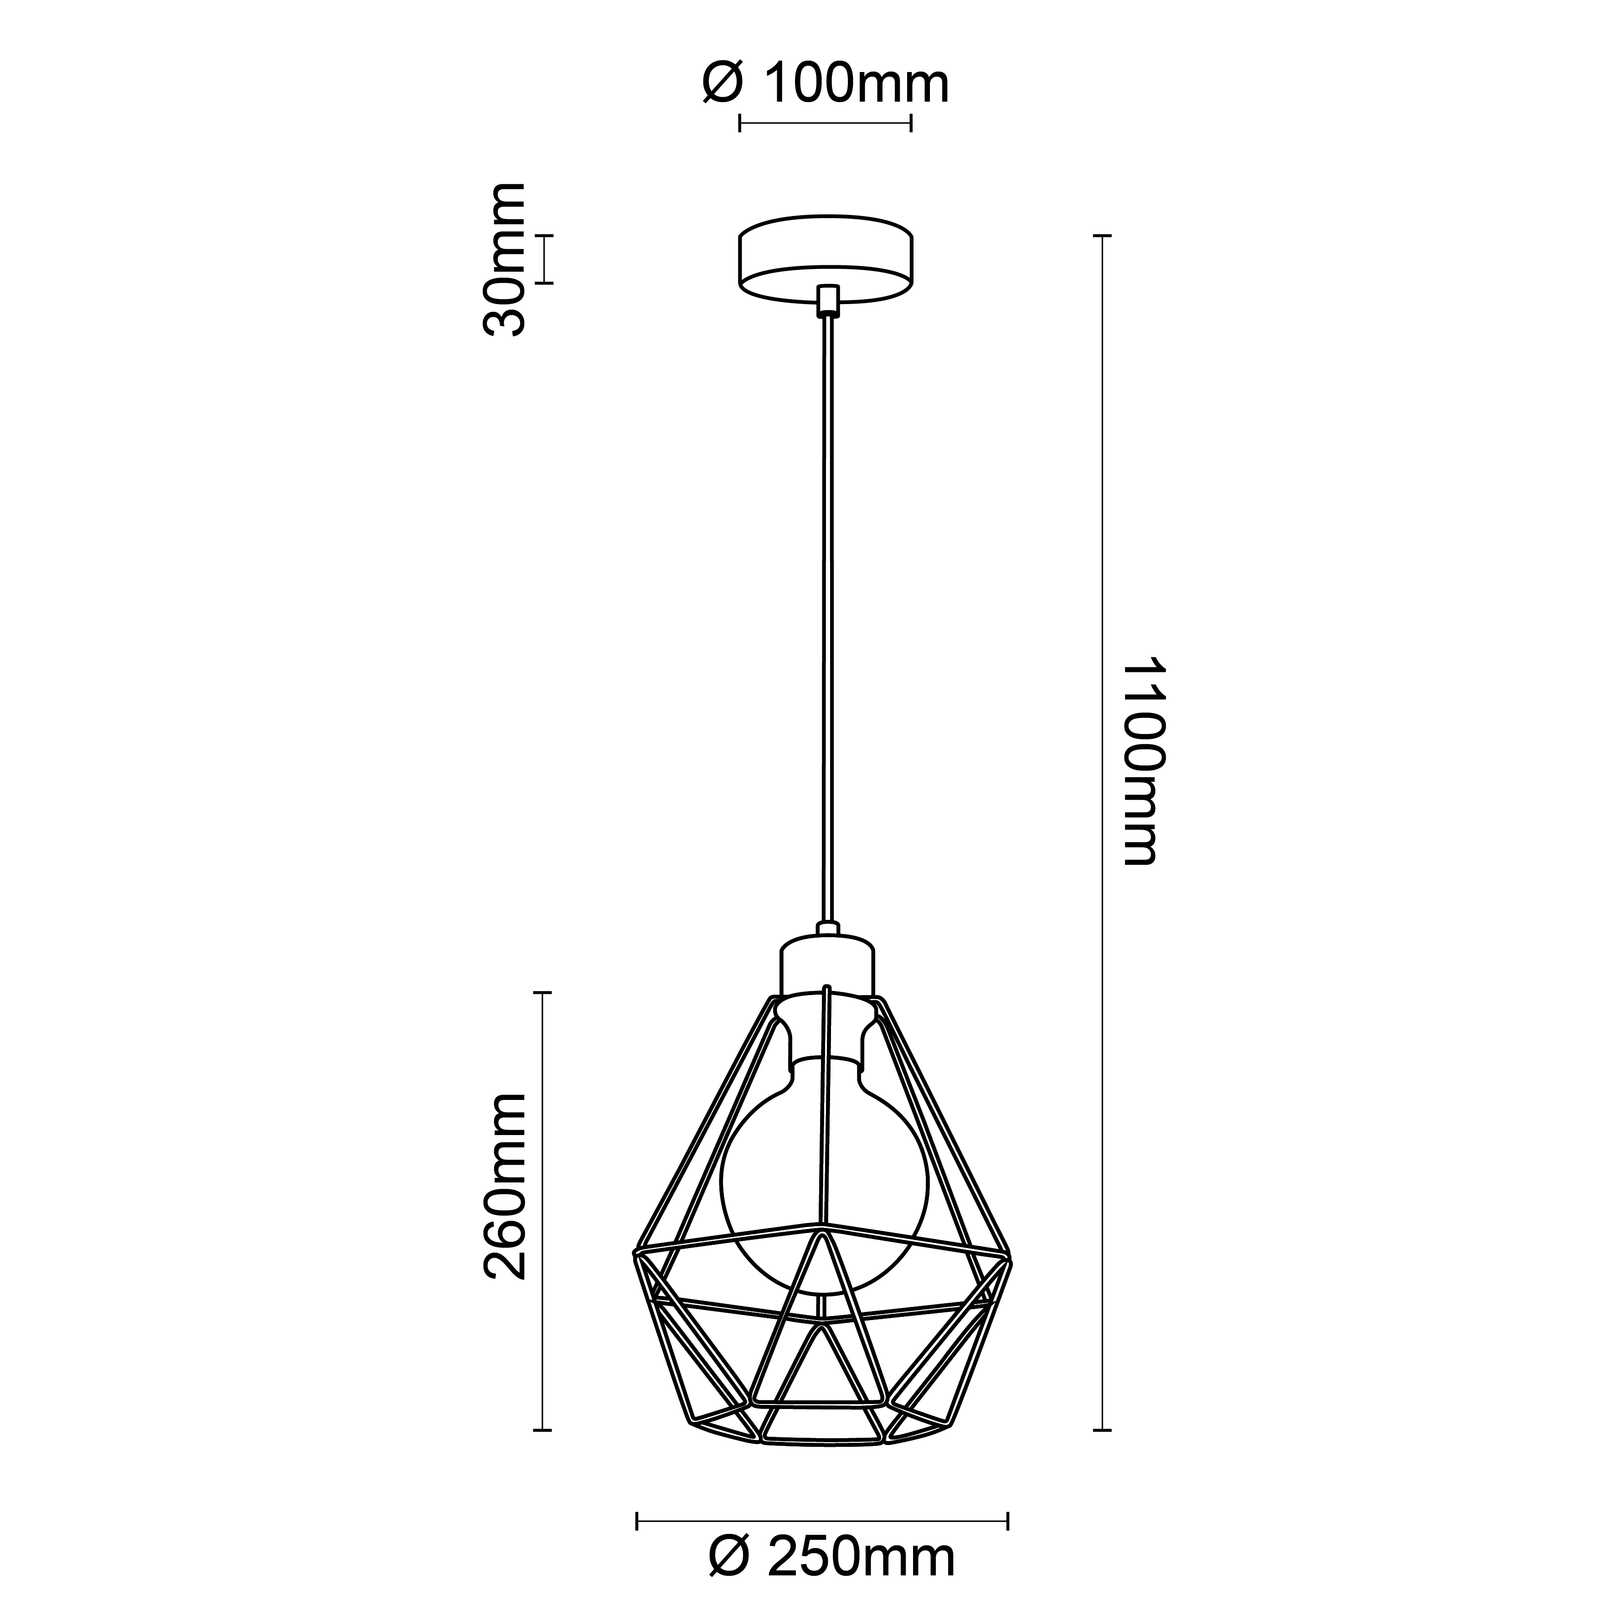             Houten hanglamp - Fijn 1 - Bruin
        